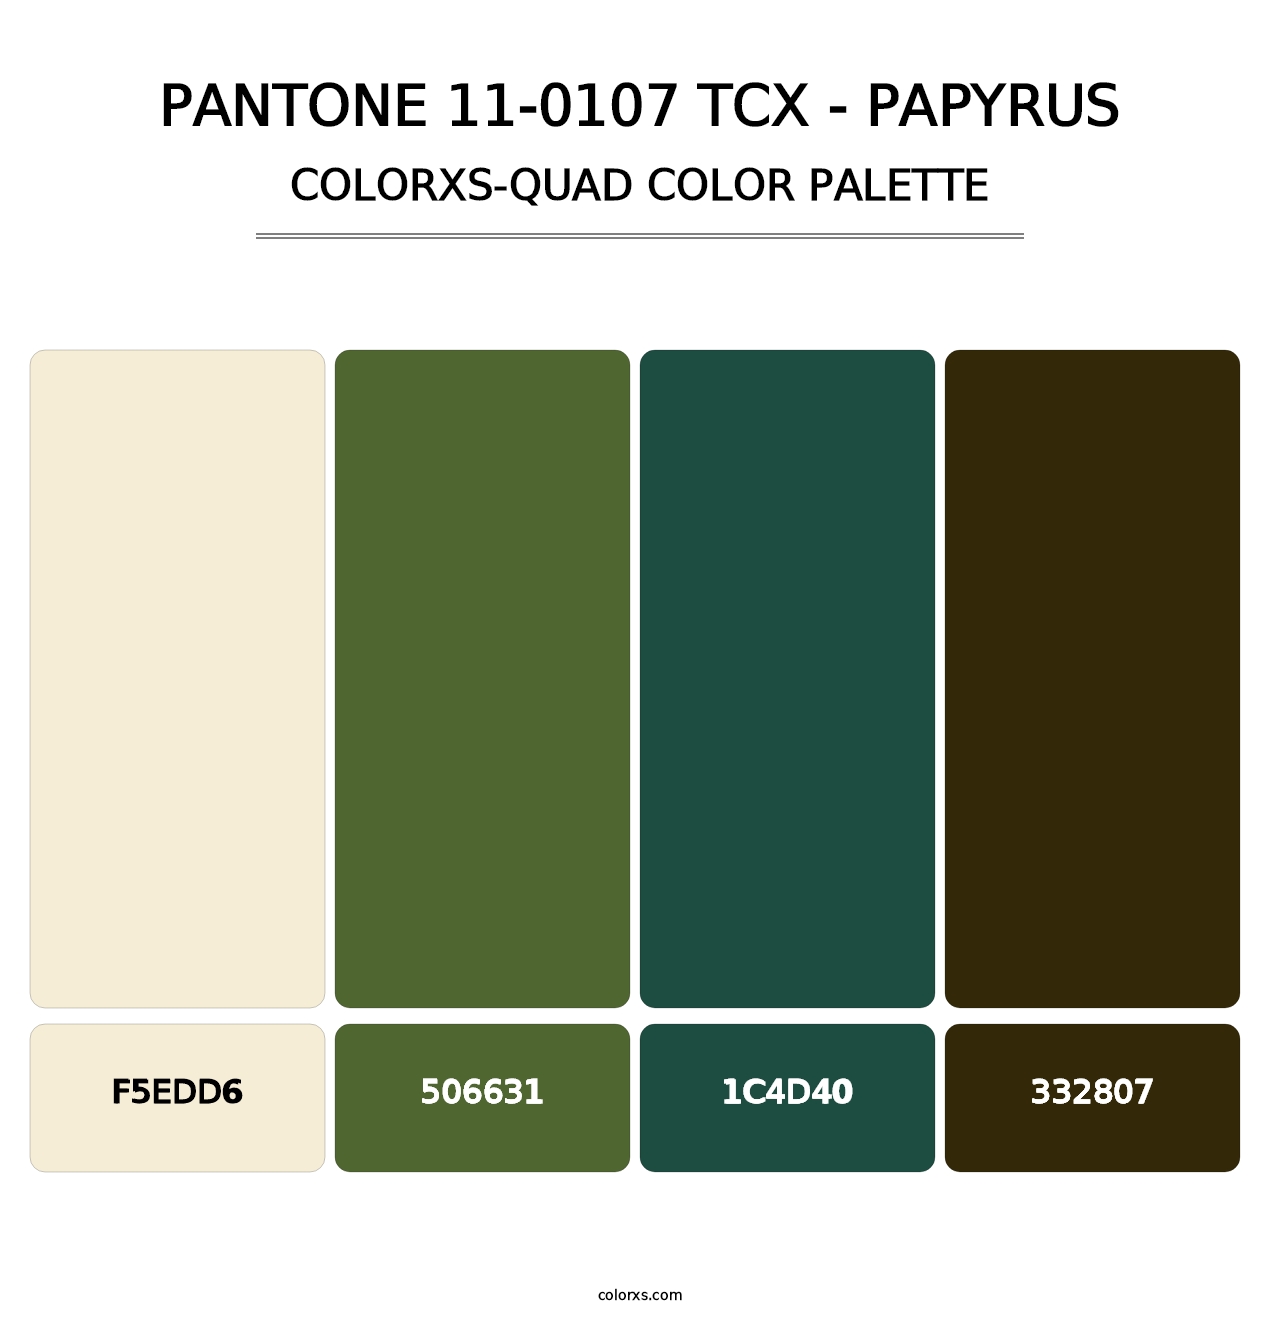 PANTONE 11-0107 TCX - Papyrus - Colorxs Quad Palette